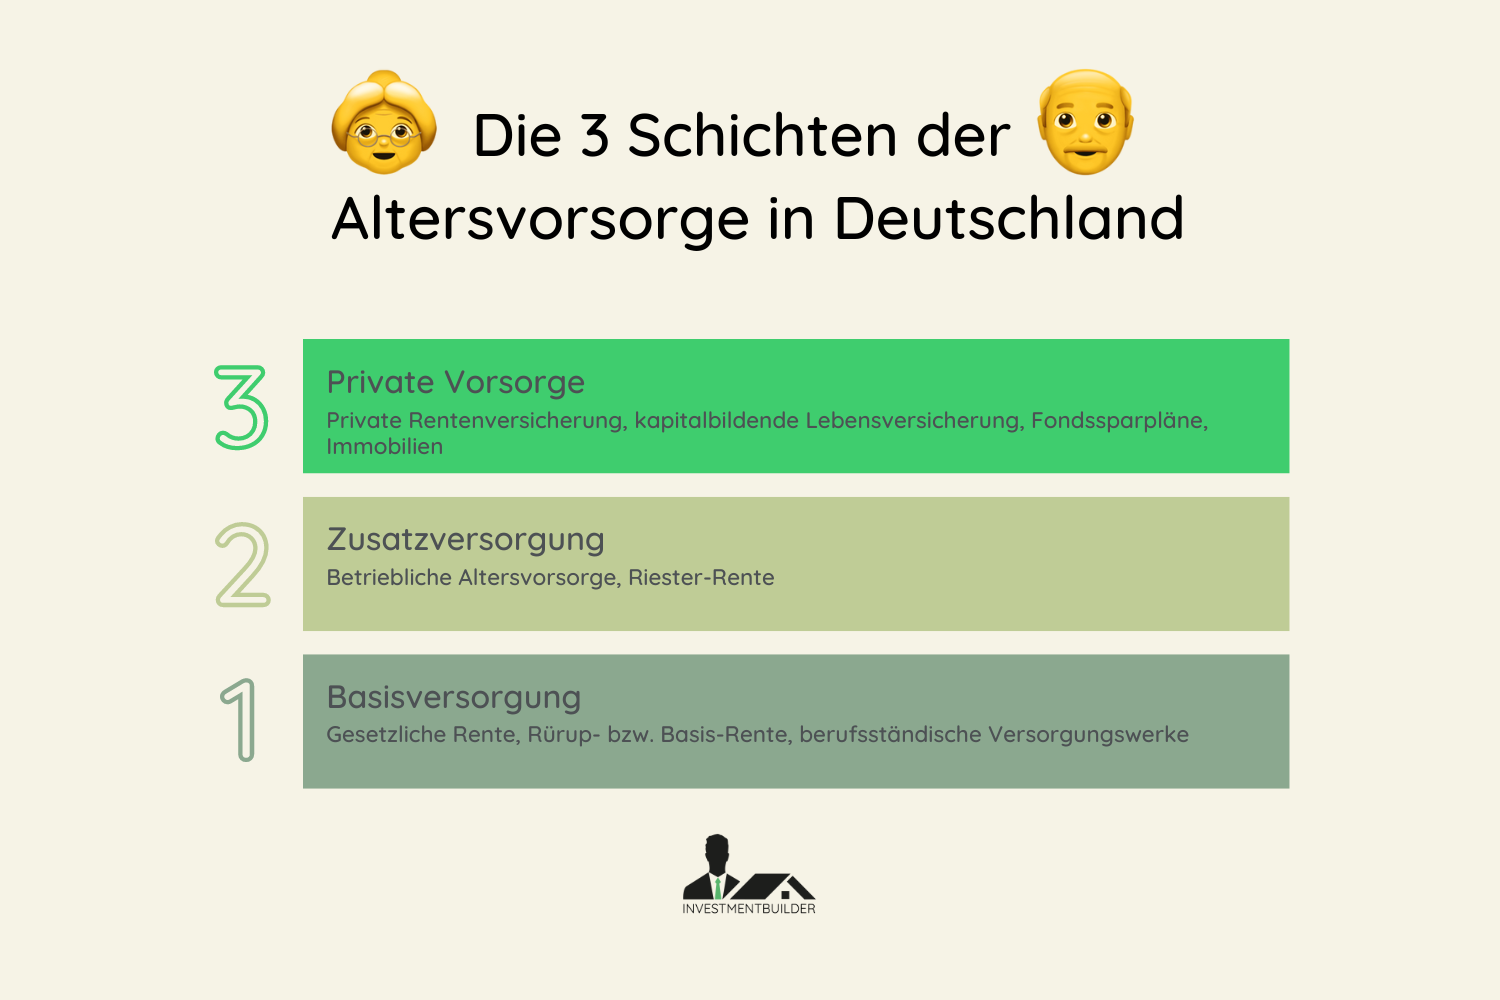 Die drei Schichten der Altersvorsorge in Deutschland